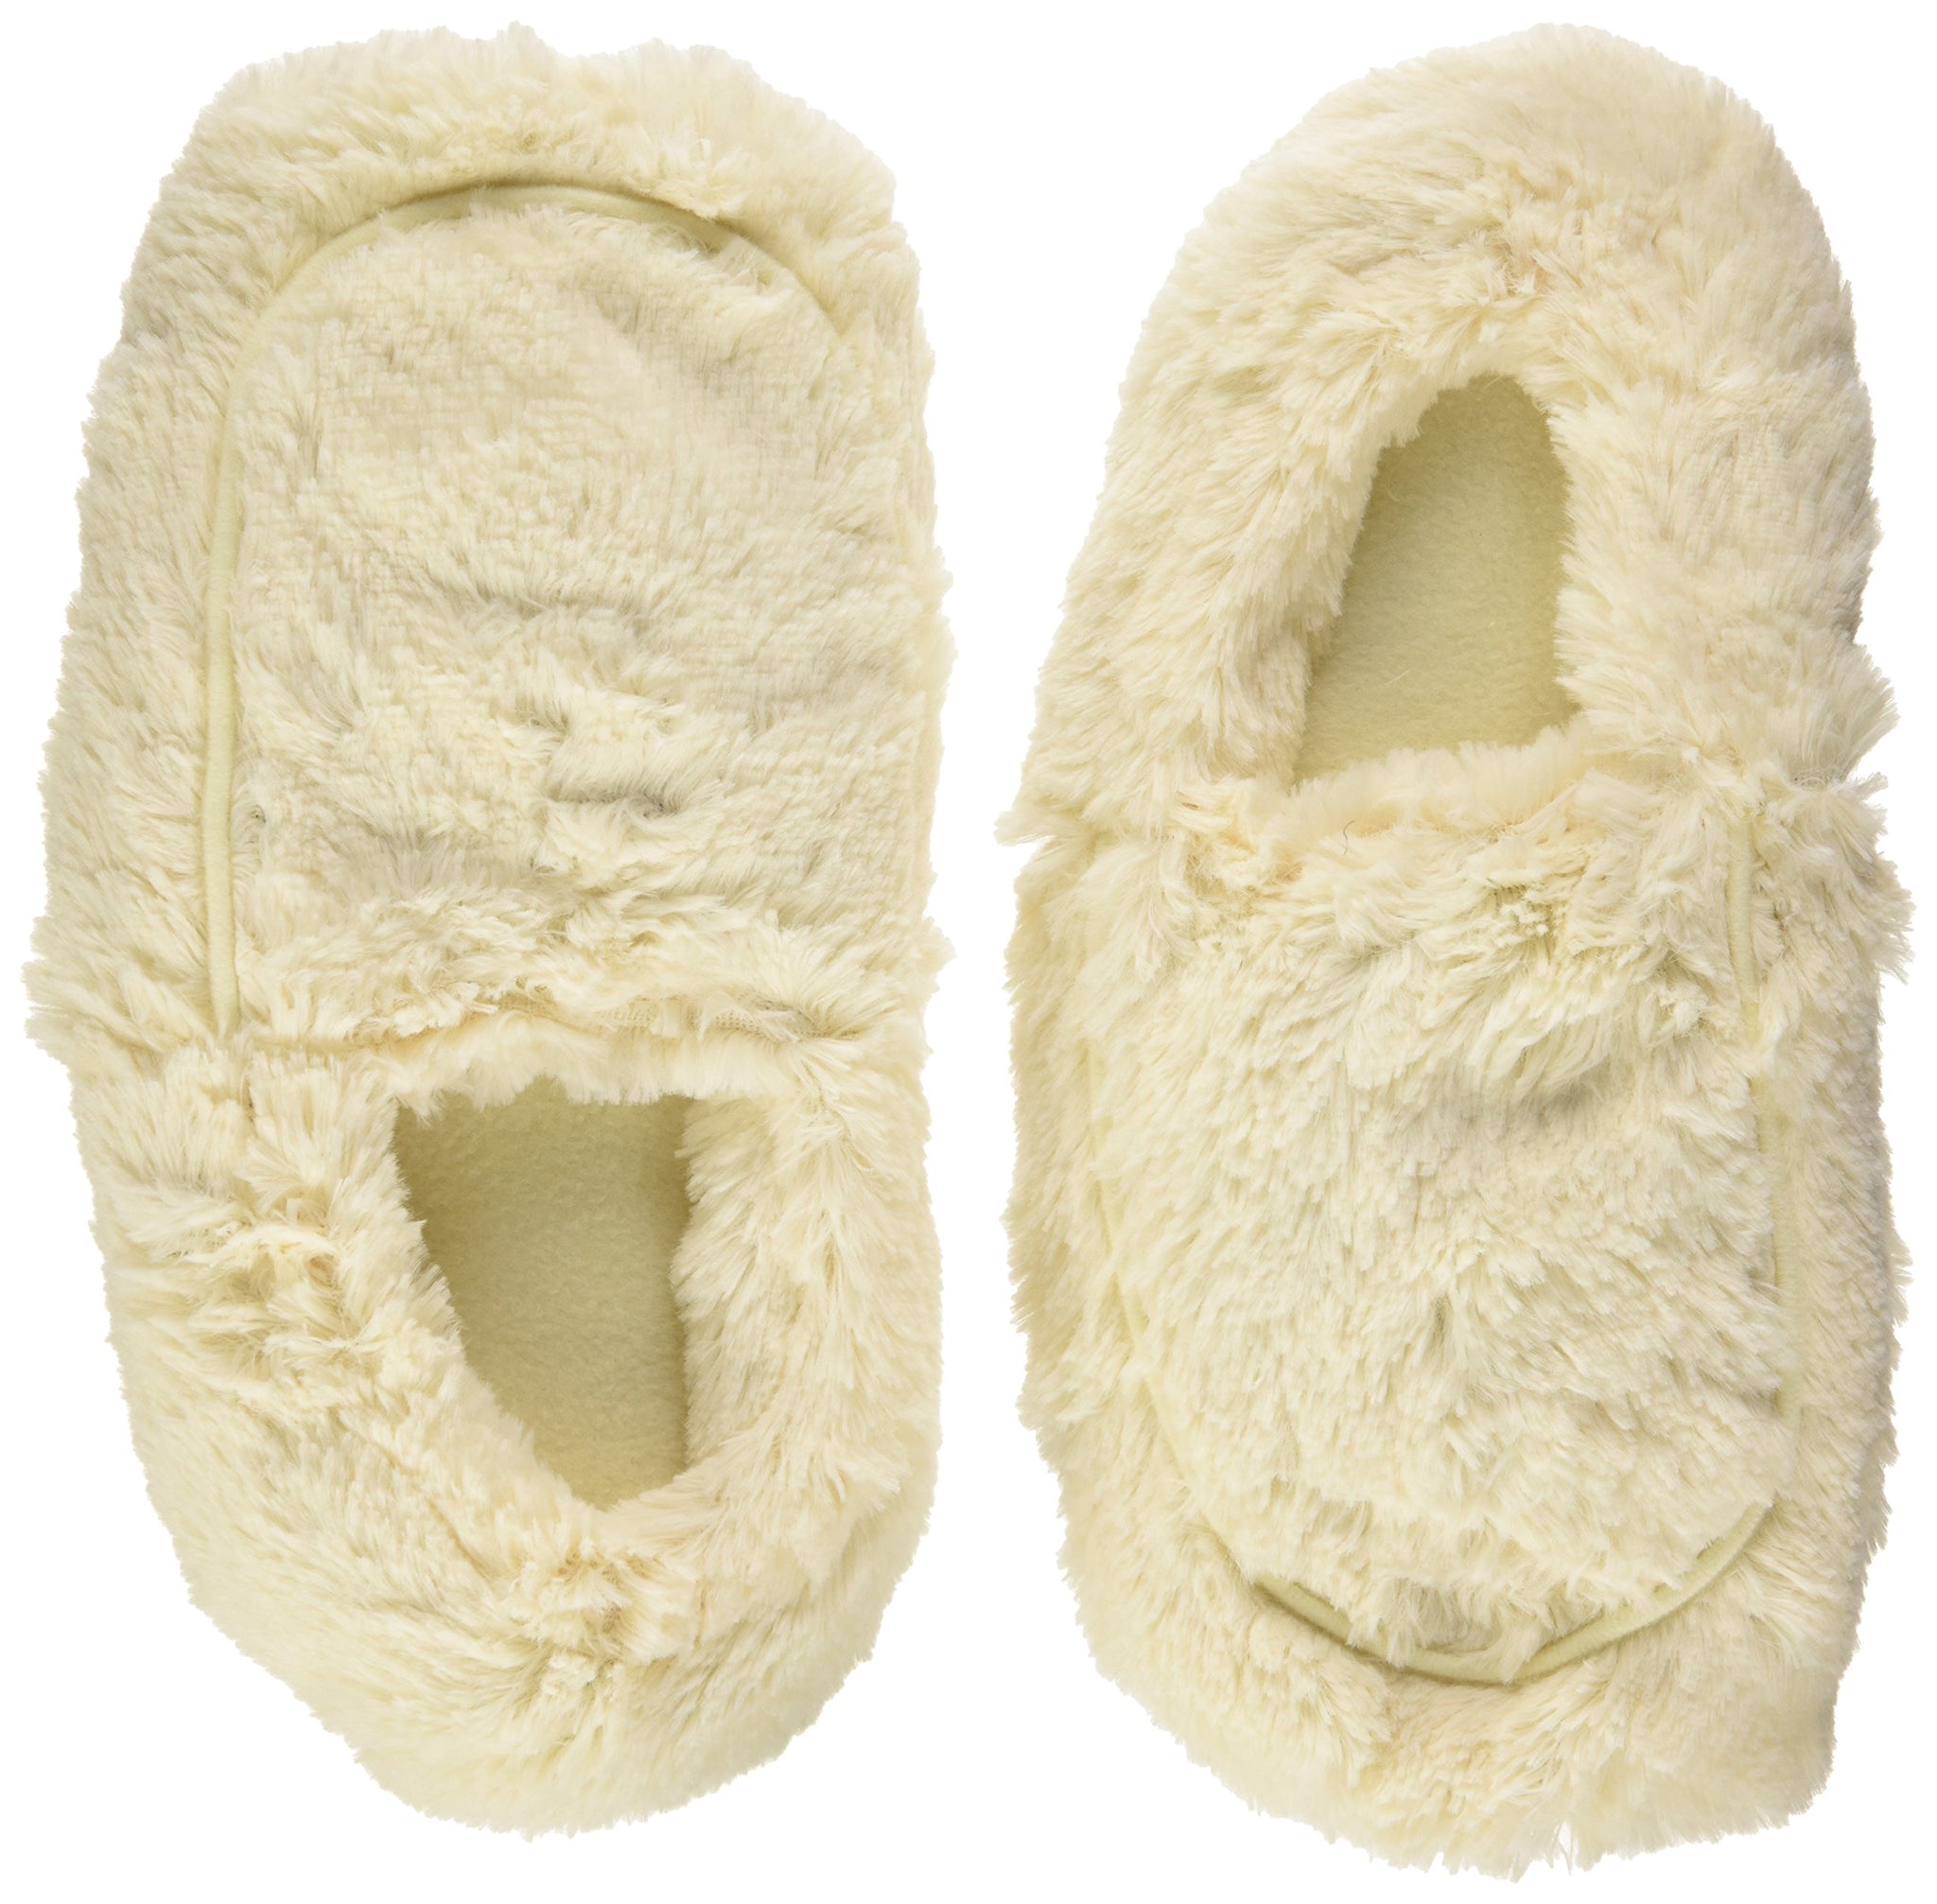 Intelex Cozy Body Slippers, Cream